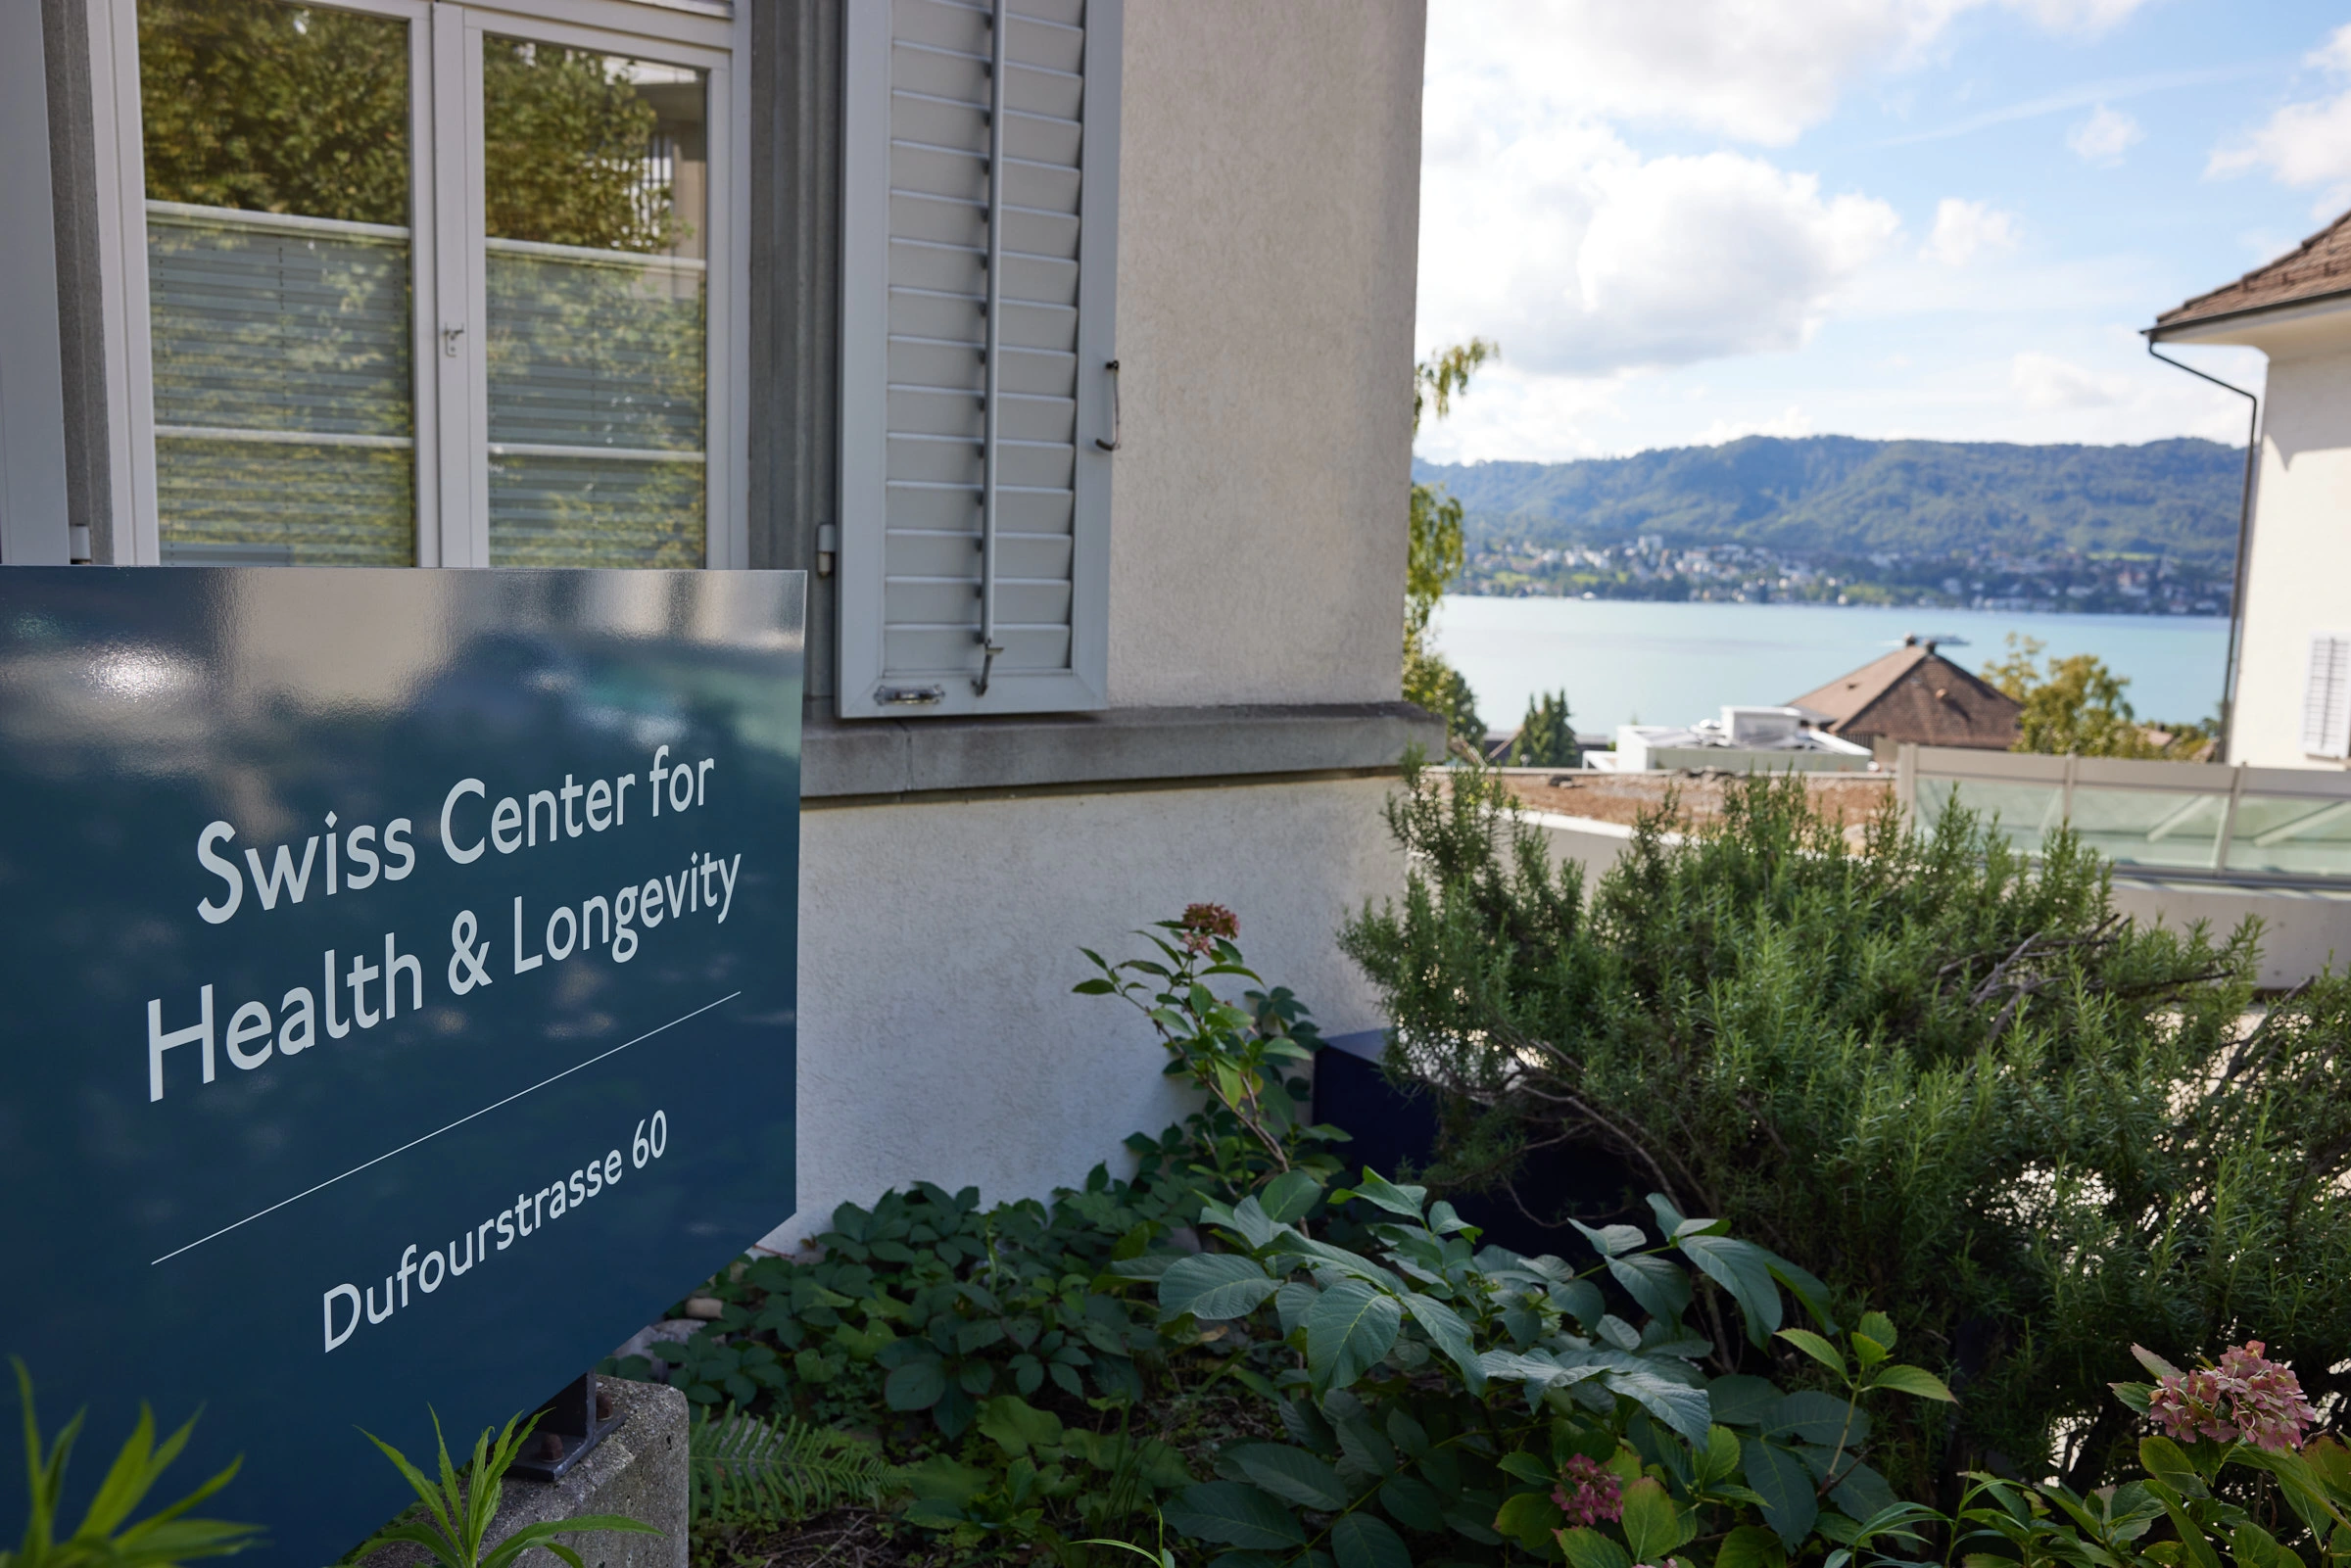 Swiss Center for Health & Longevity